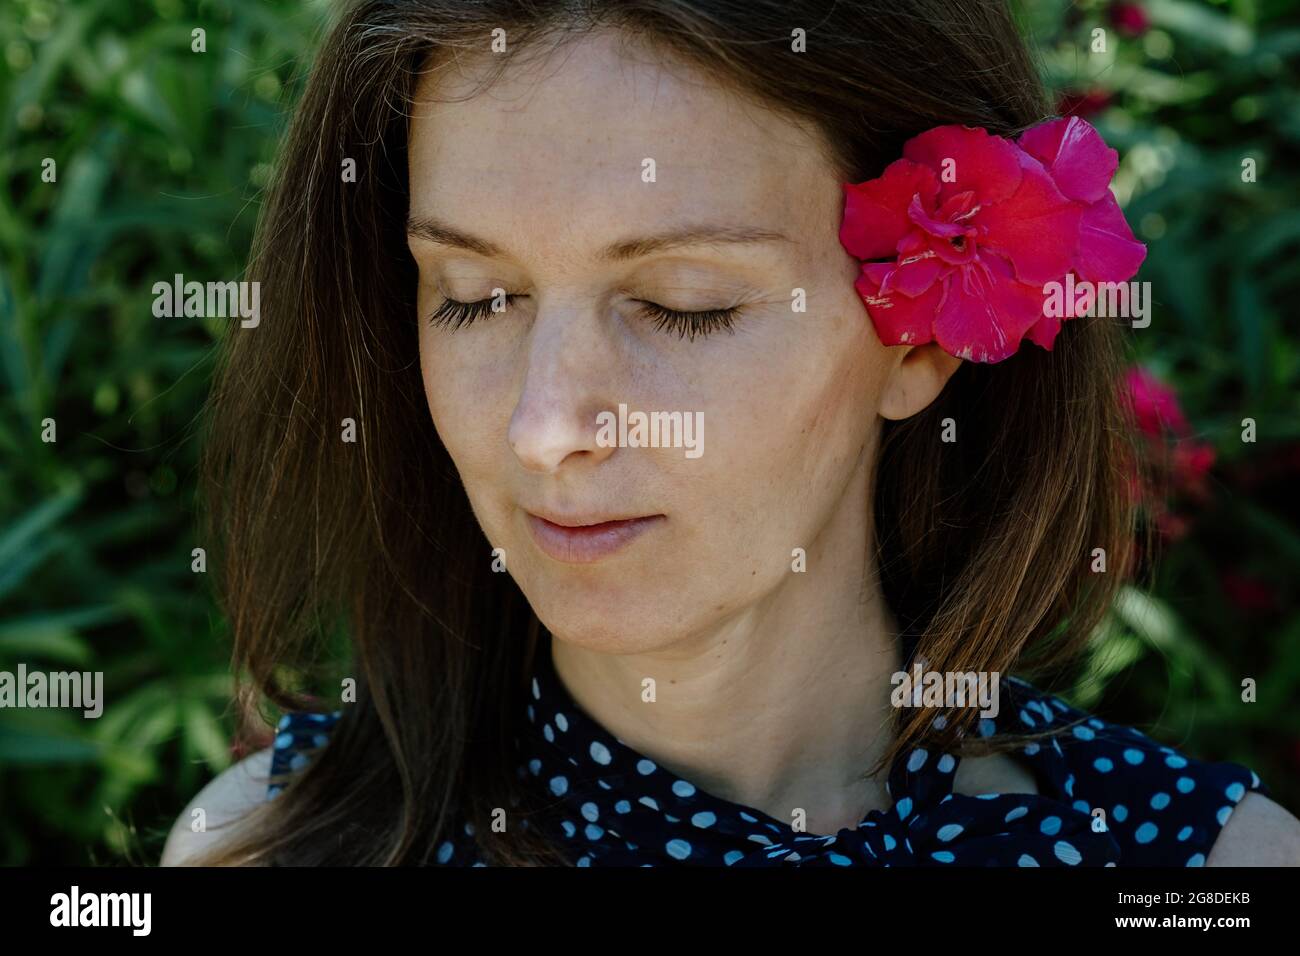 Donna spagnola con un fiore tra i capelli, con occhi chiusi, gode dell'atmosfera rilassante del giardino Foto Stock